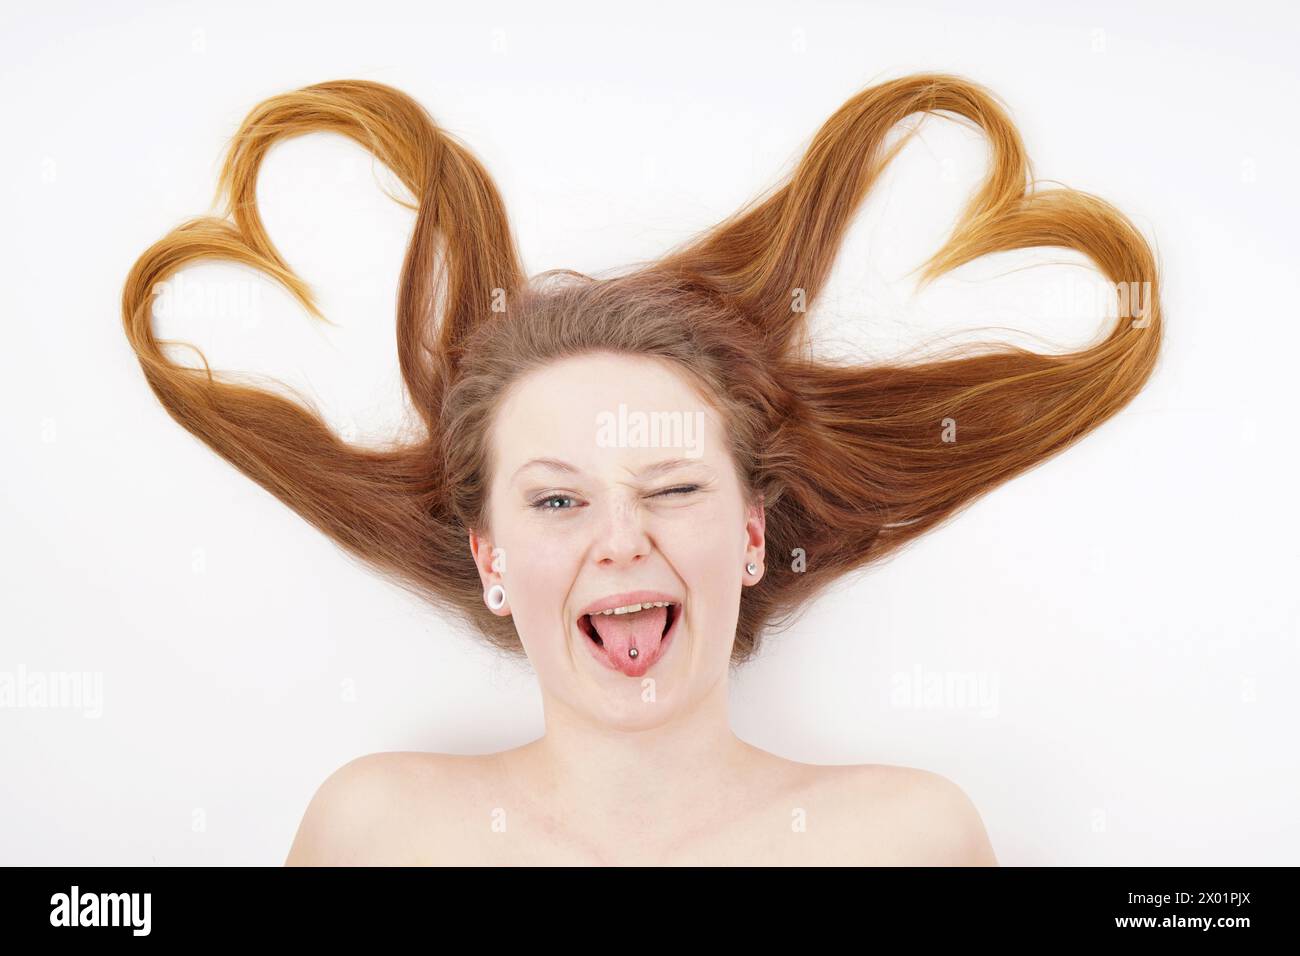 Junge Frau, deren Haare Herzform bilden und zwinkern, während sie die Zunge herausstechen Stockfoto